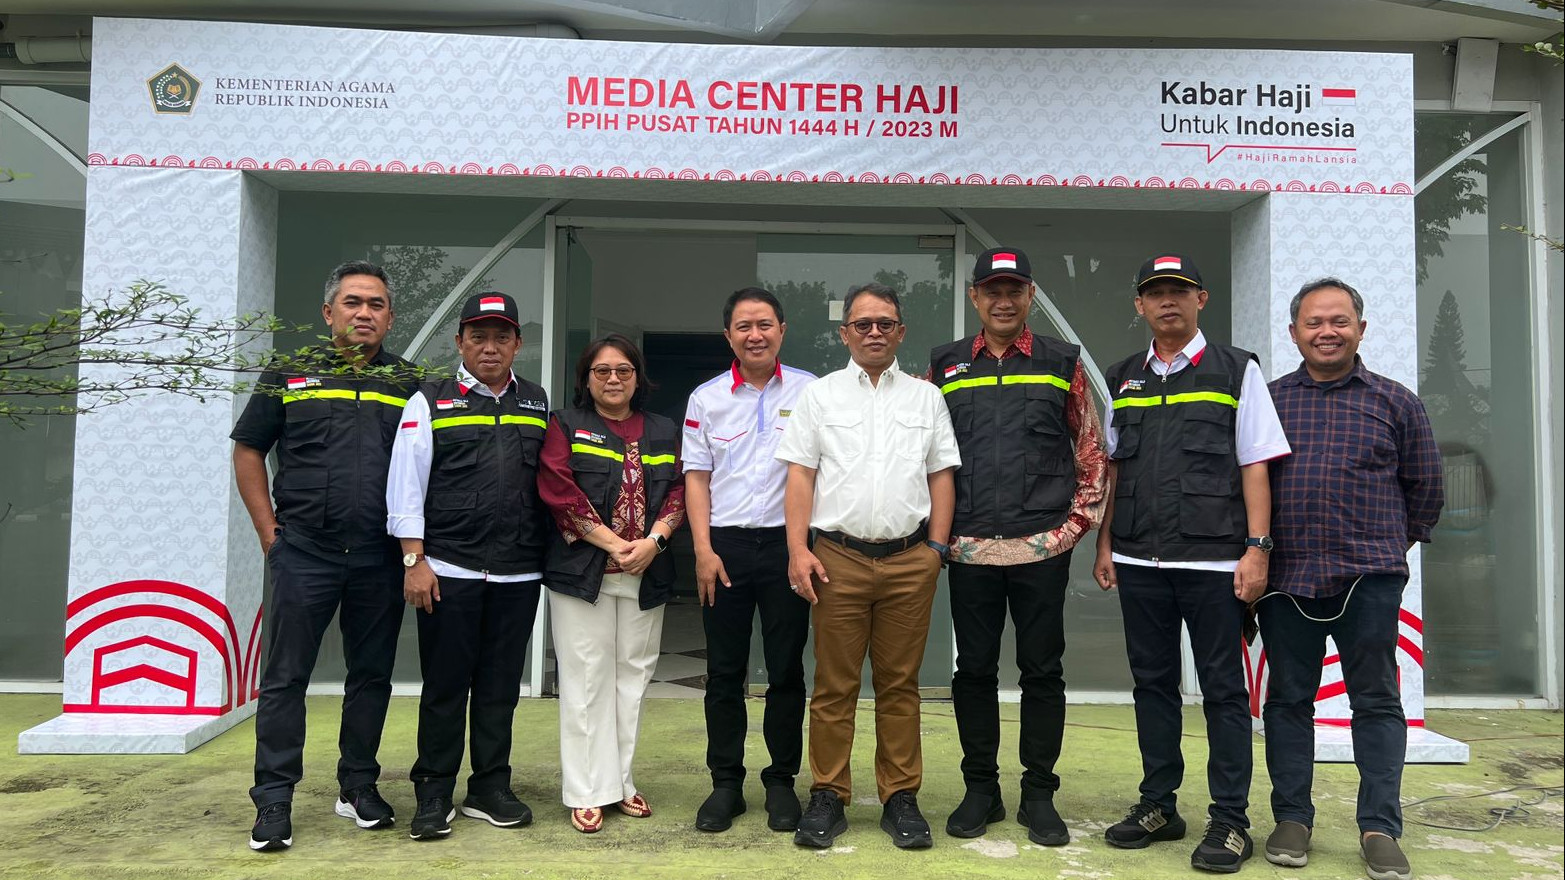 Kemenag Siapkan Media Center Haji di Jakarta, Pusat Informasi Seputar Haji Terkini